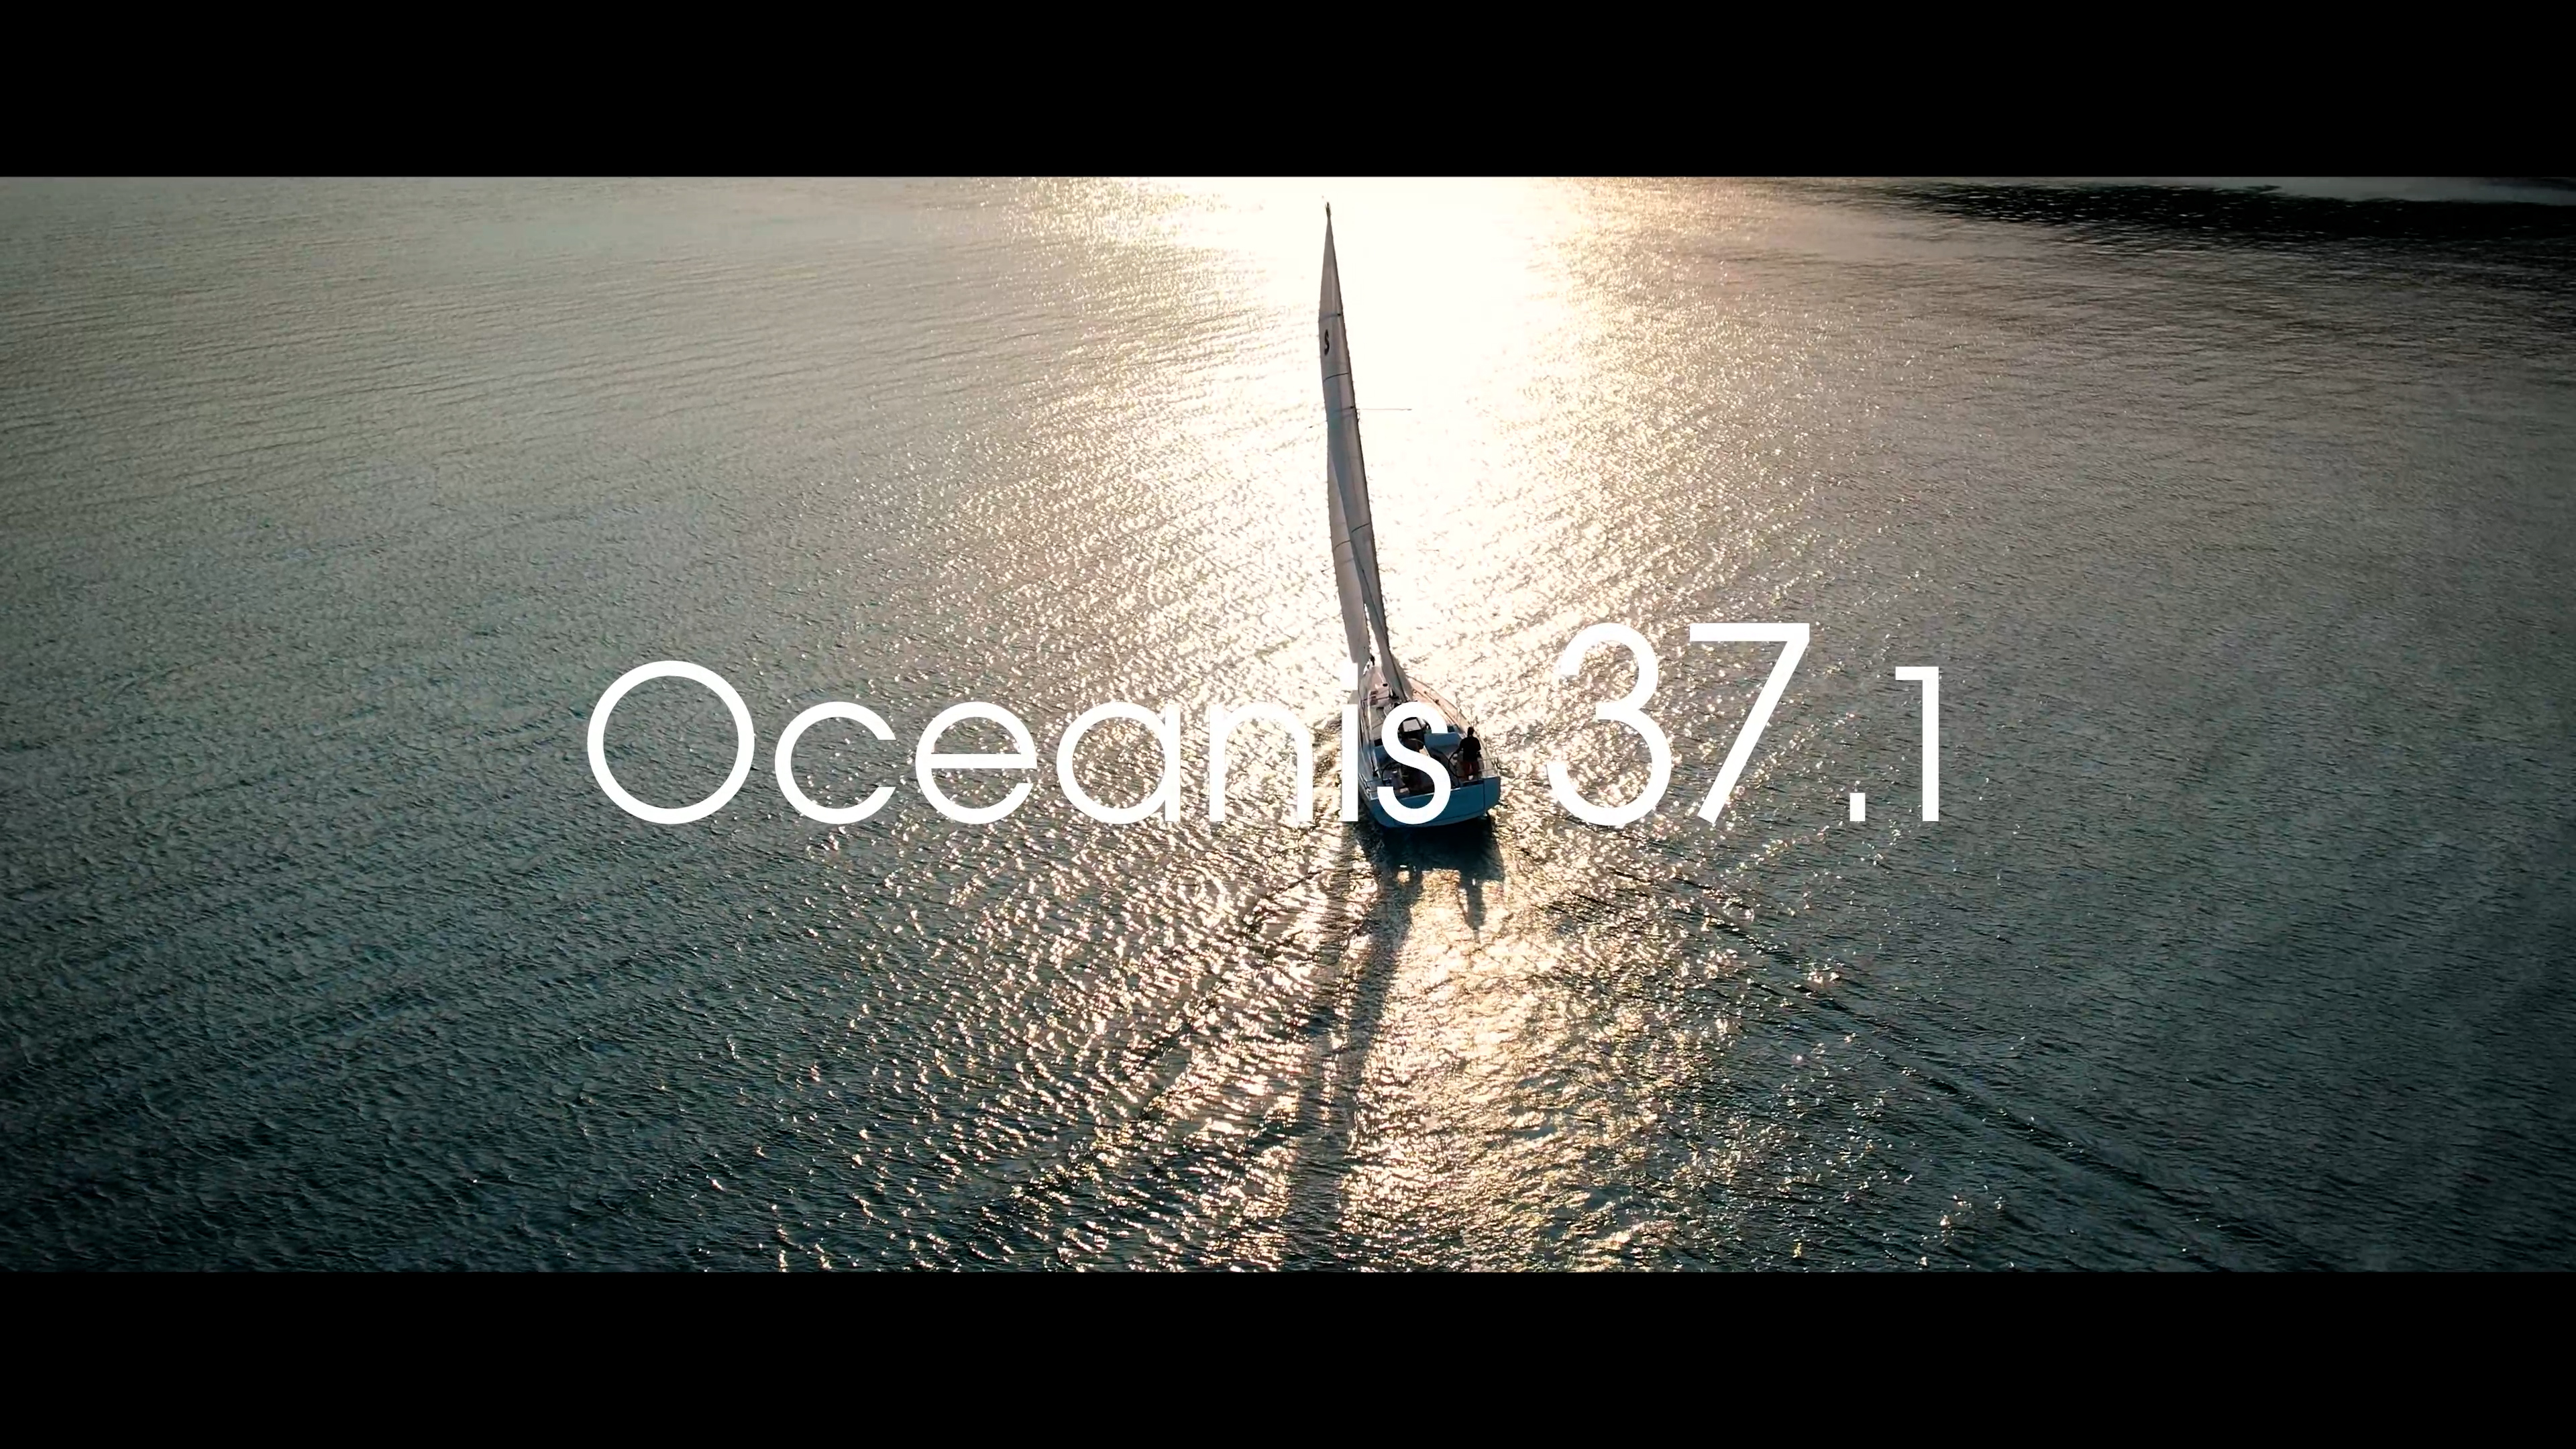 {"TR":"Oceanis 37.1","EN":"Oceanis 37.1"}